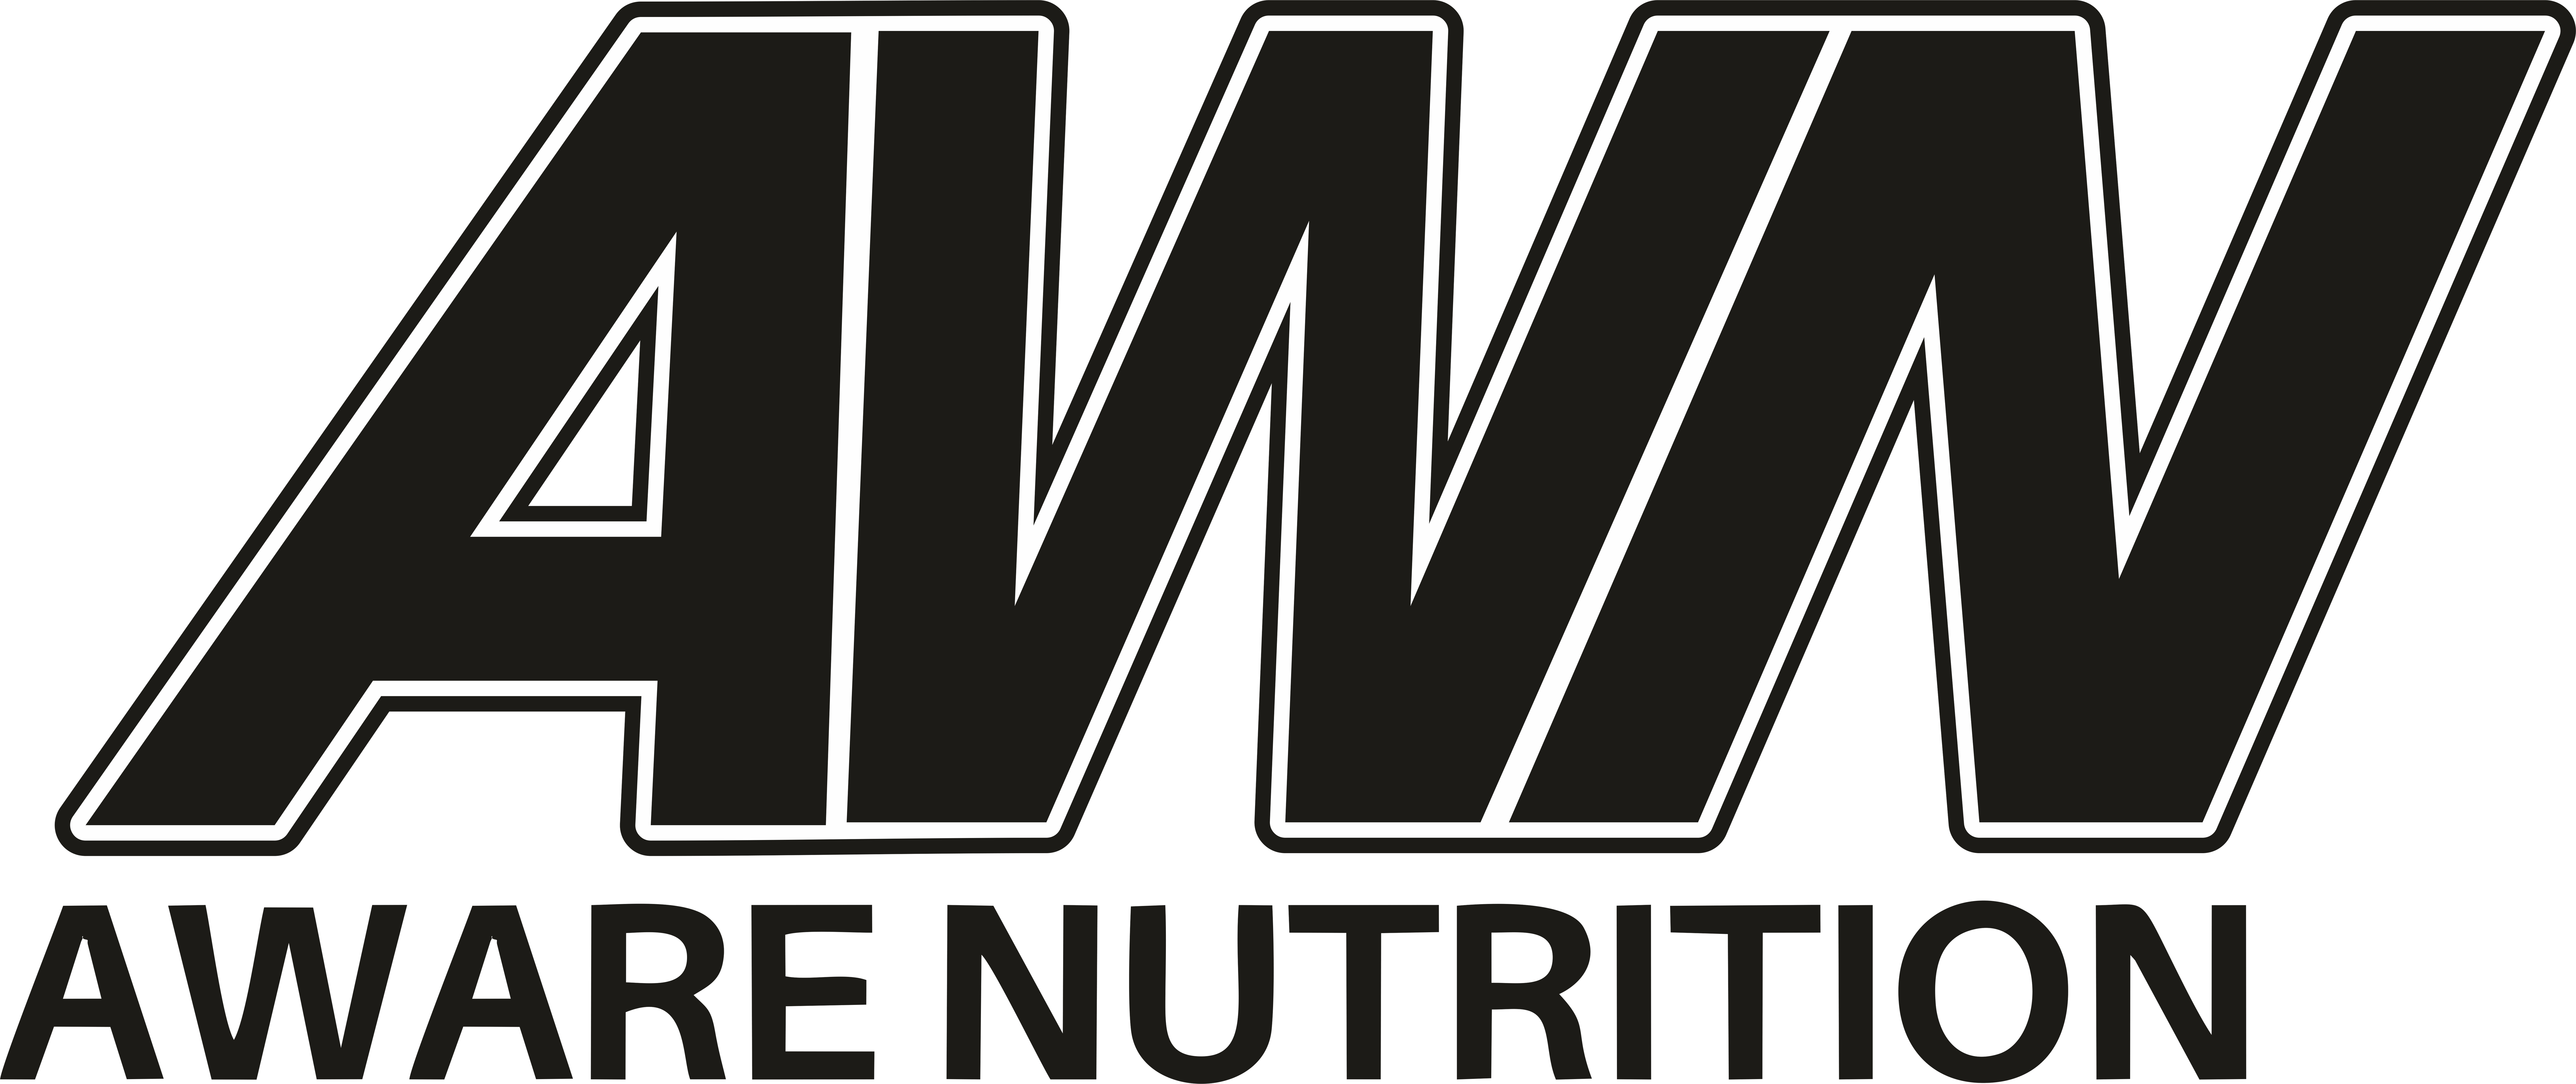 Aware Nutrition på Onlinerabatt